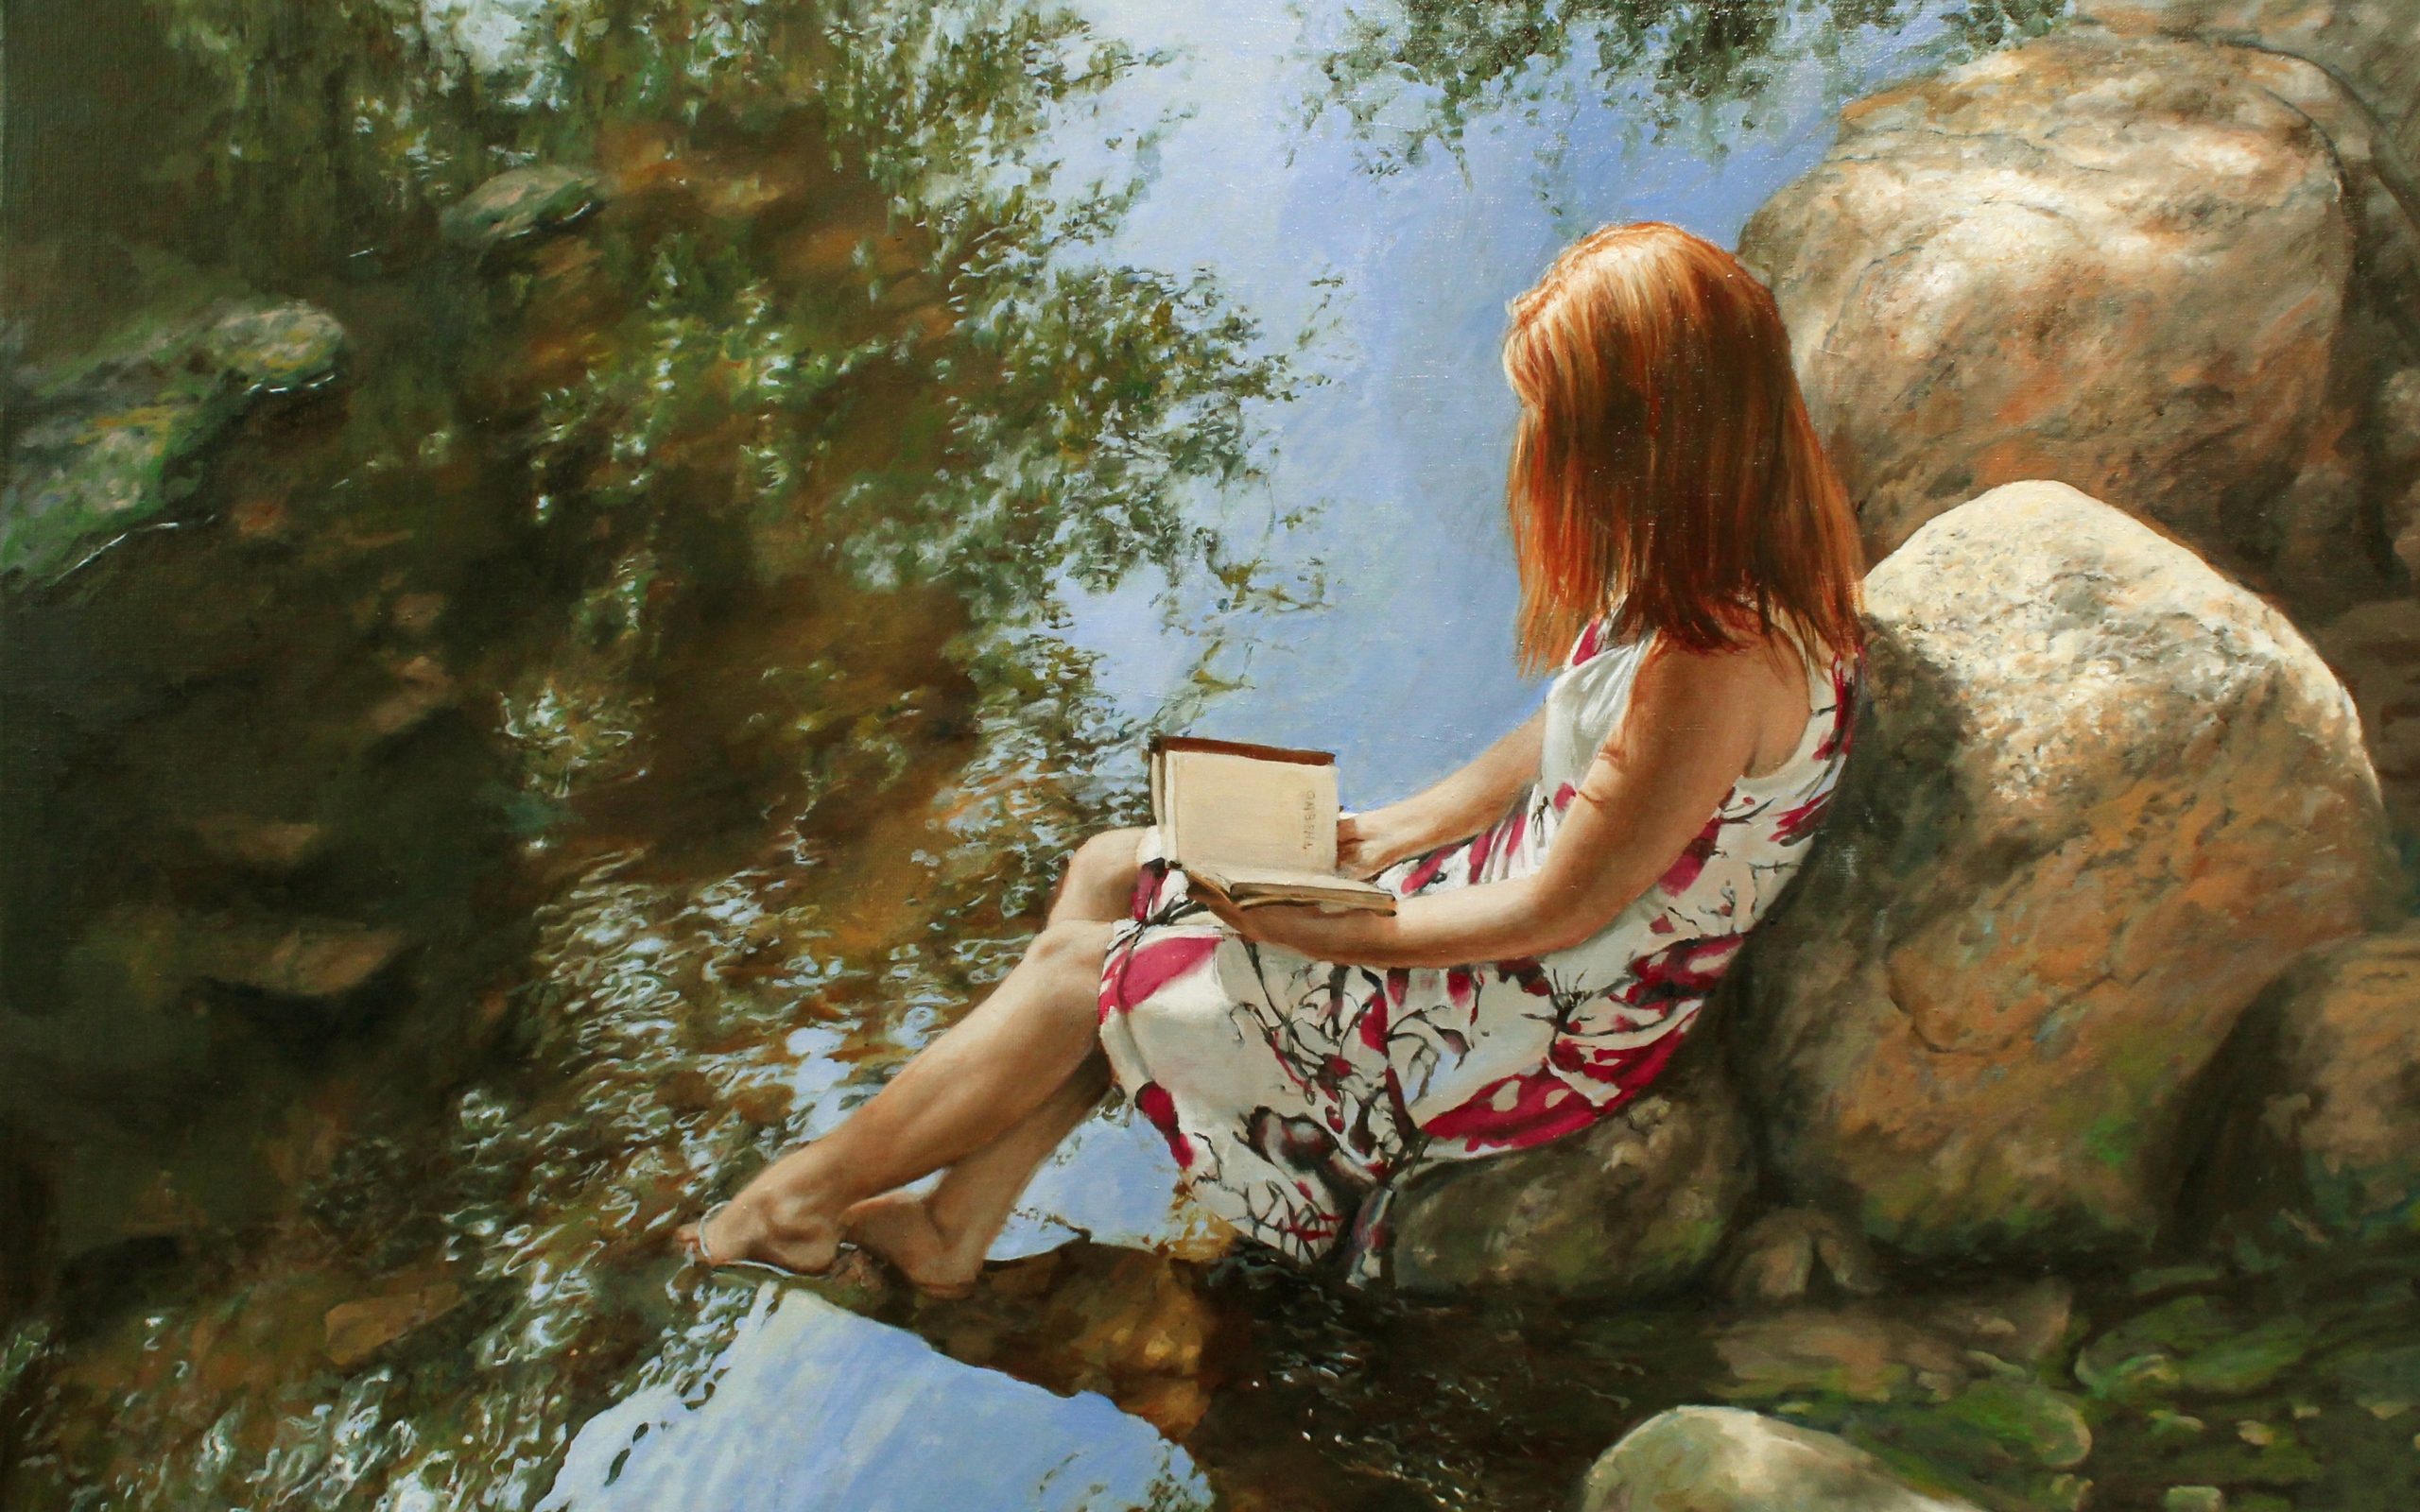 рисованные обои, девочка на камнях в воде с книгой, картина, художество, исскуство